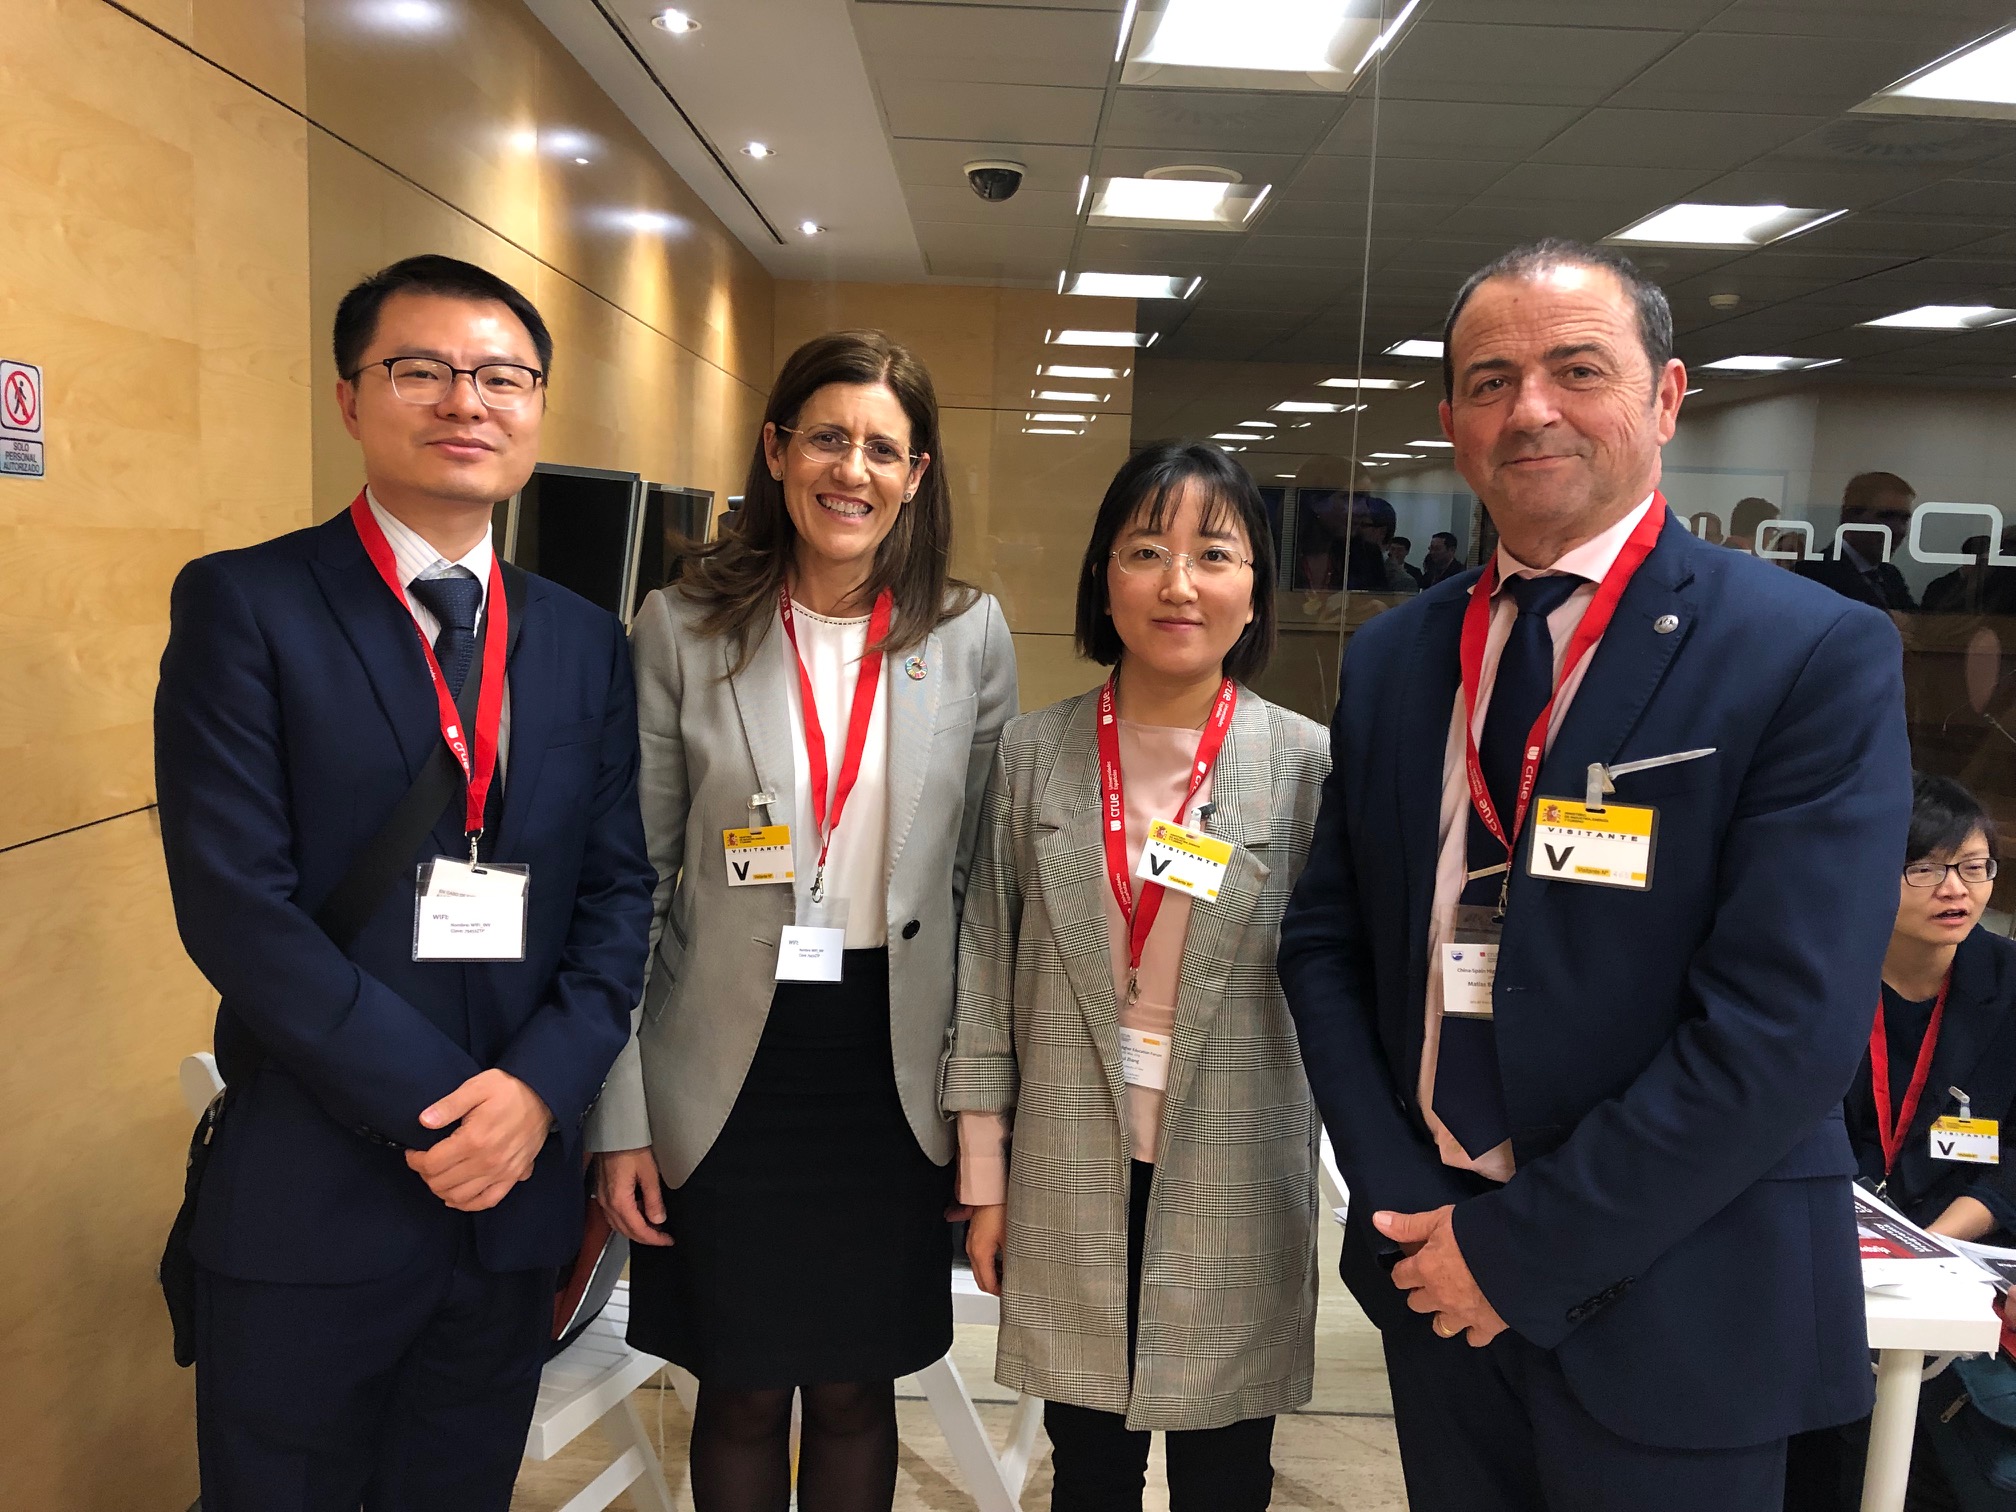 La UMU asiste al encuentro CRUE entre universidades Españolas y Chinas en Madrid